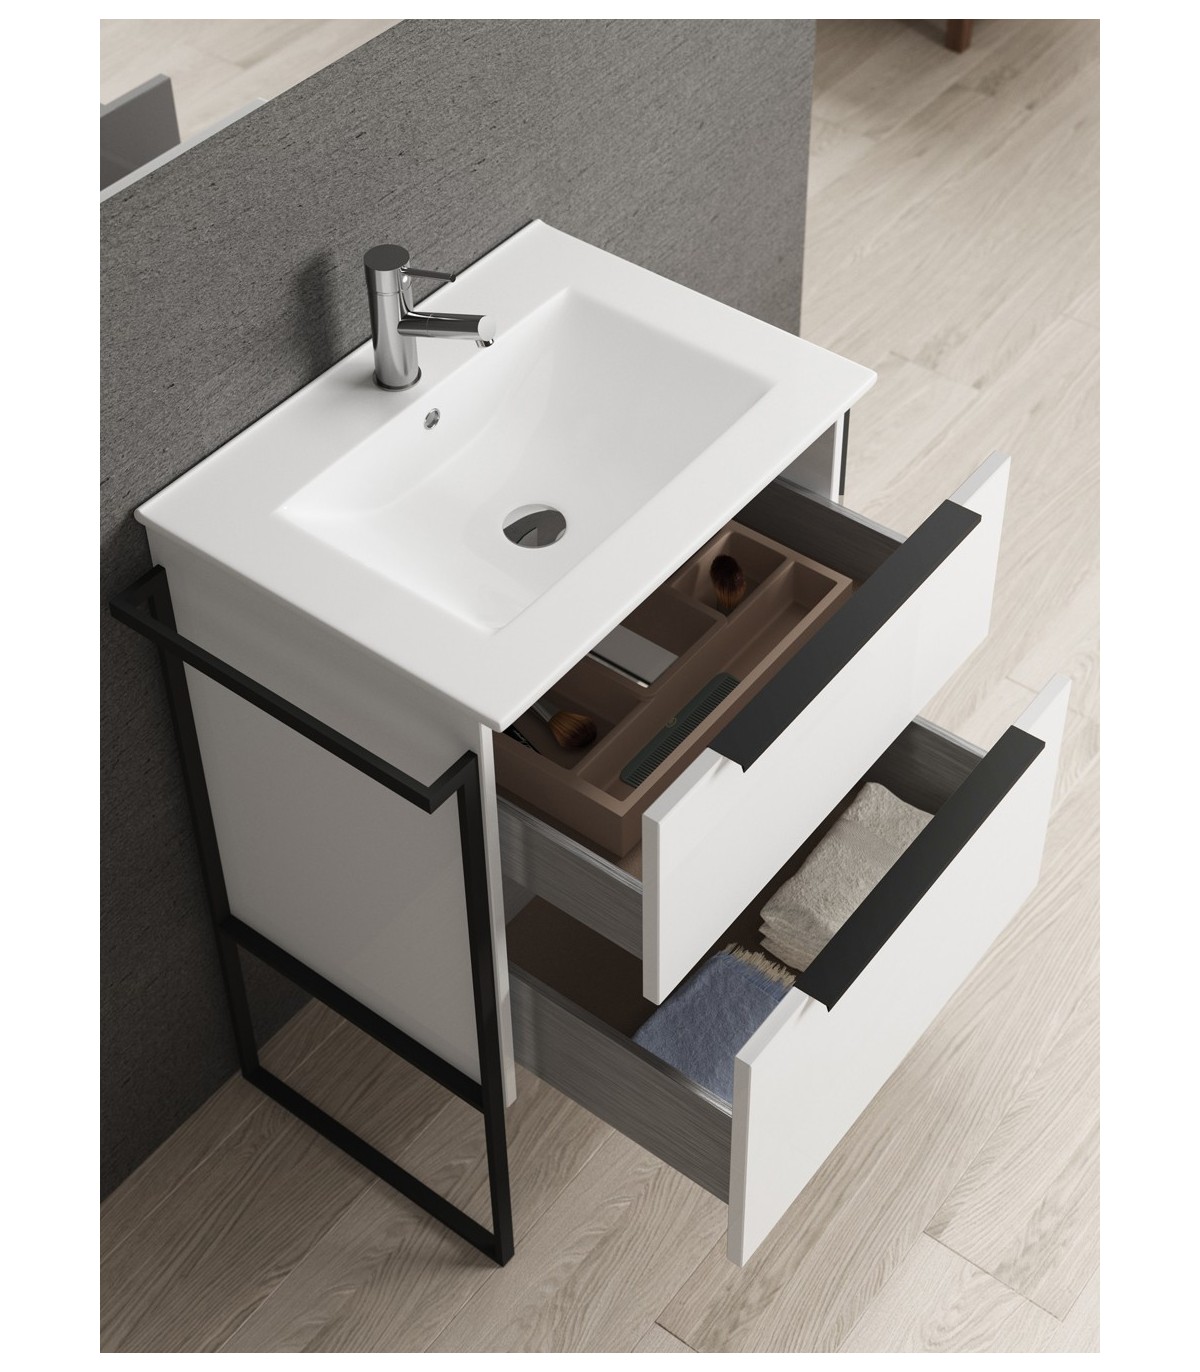 Mueble de 120 cm - GALSAKY detalles negros con doble lavabo de Coycama